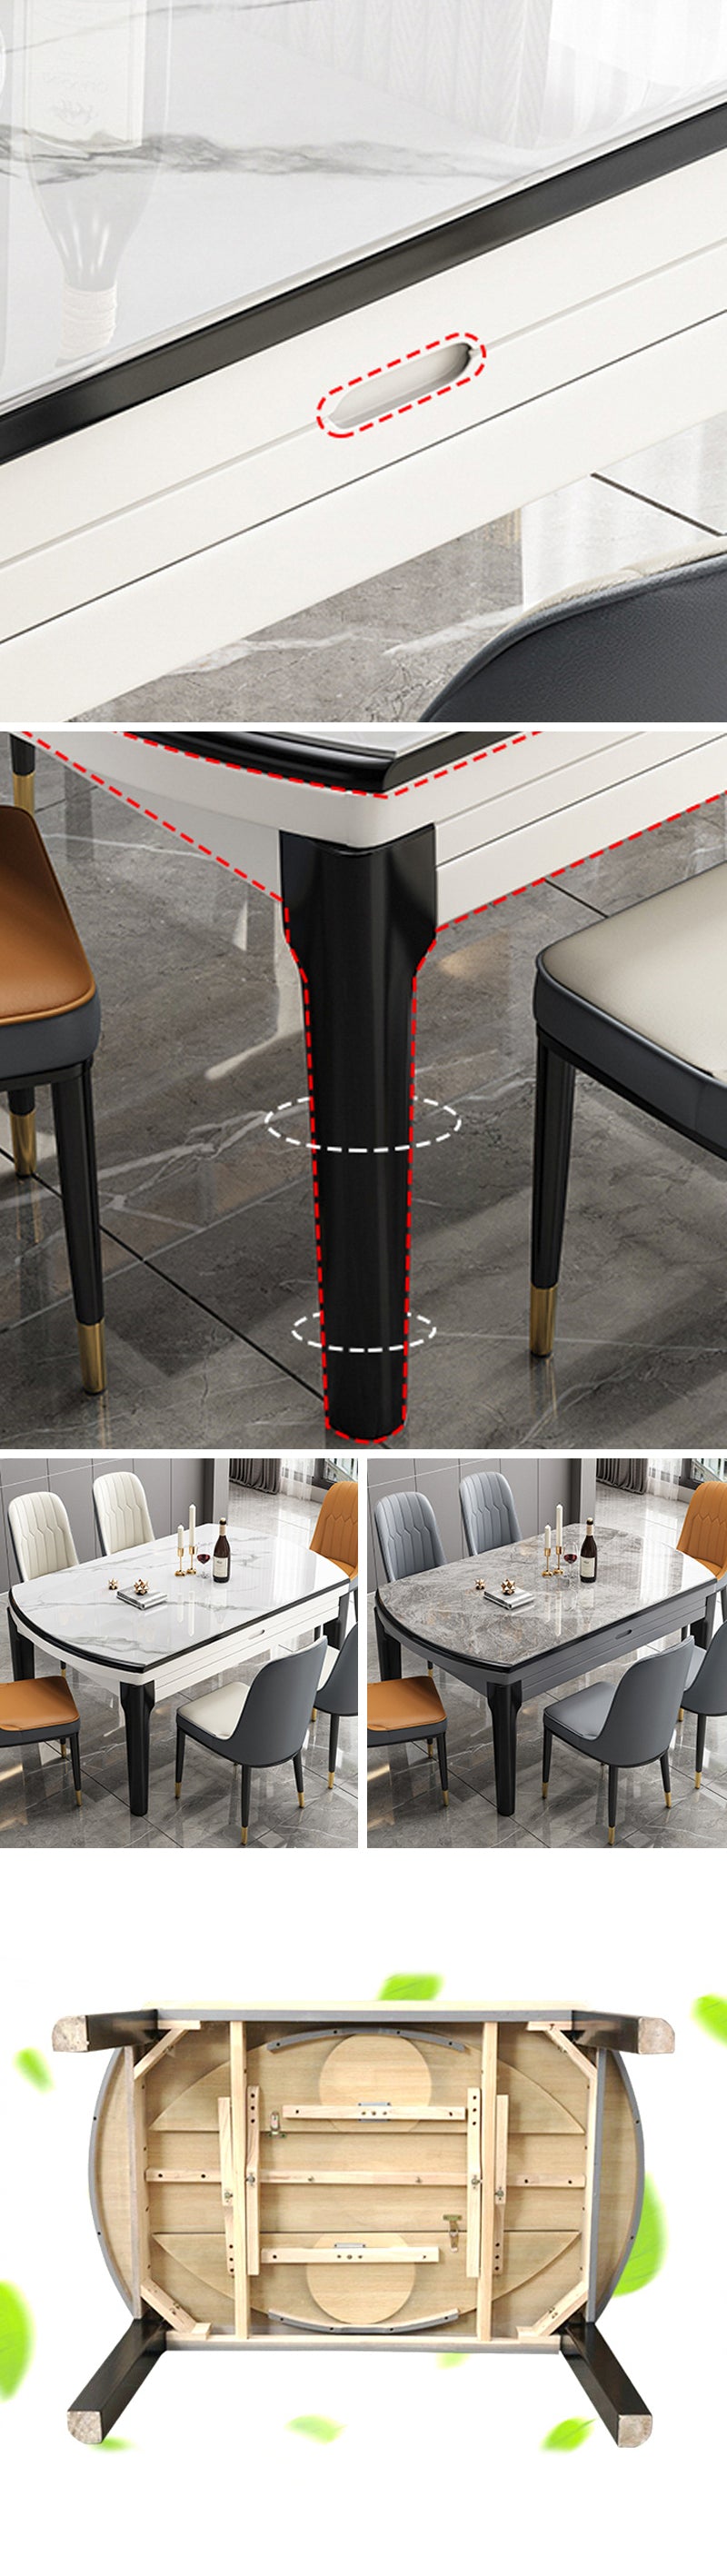 【ダイニングテーブル】 高級感 伸長式 天板厚み選べる ダイニングテーブル 椅子セット ※伸縮機能が叶え、使用シーンやお部屋のレイアウトに合わせて形を選べます。